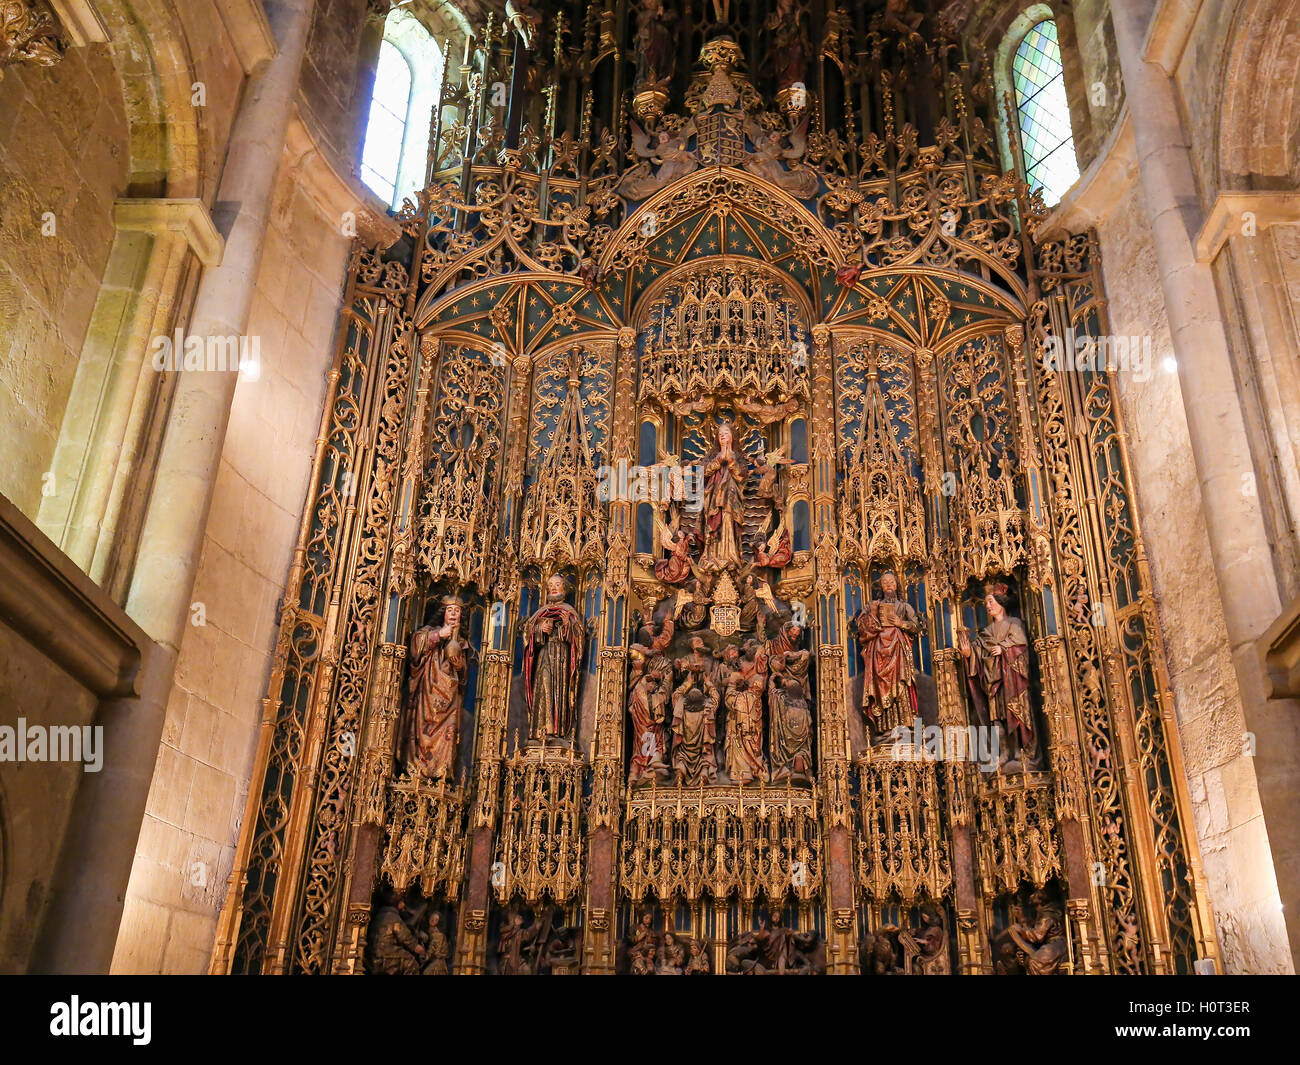 Herrliche 15. Jahrhundert Altarbild in der alten Kathedrale oder Se Velha von Coimbra, Portugal Stockfoto